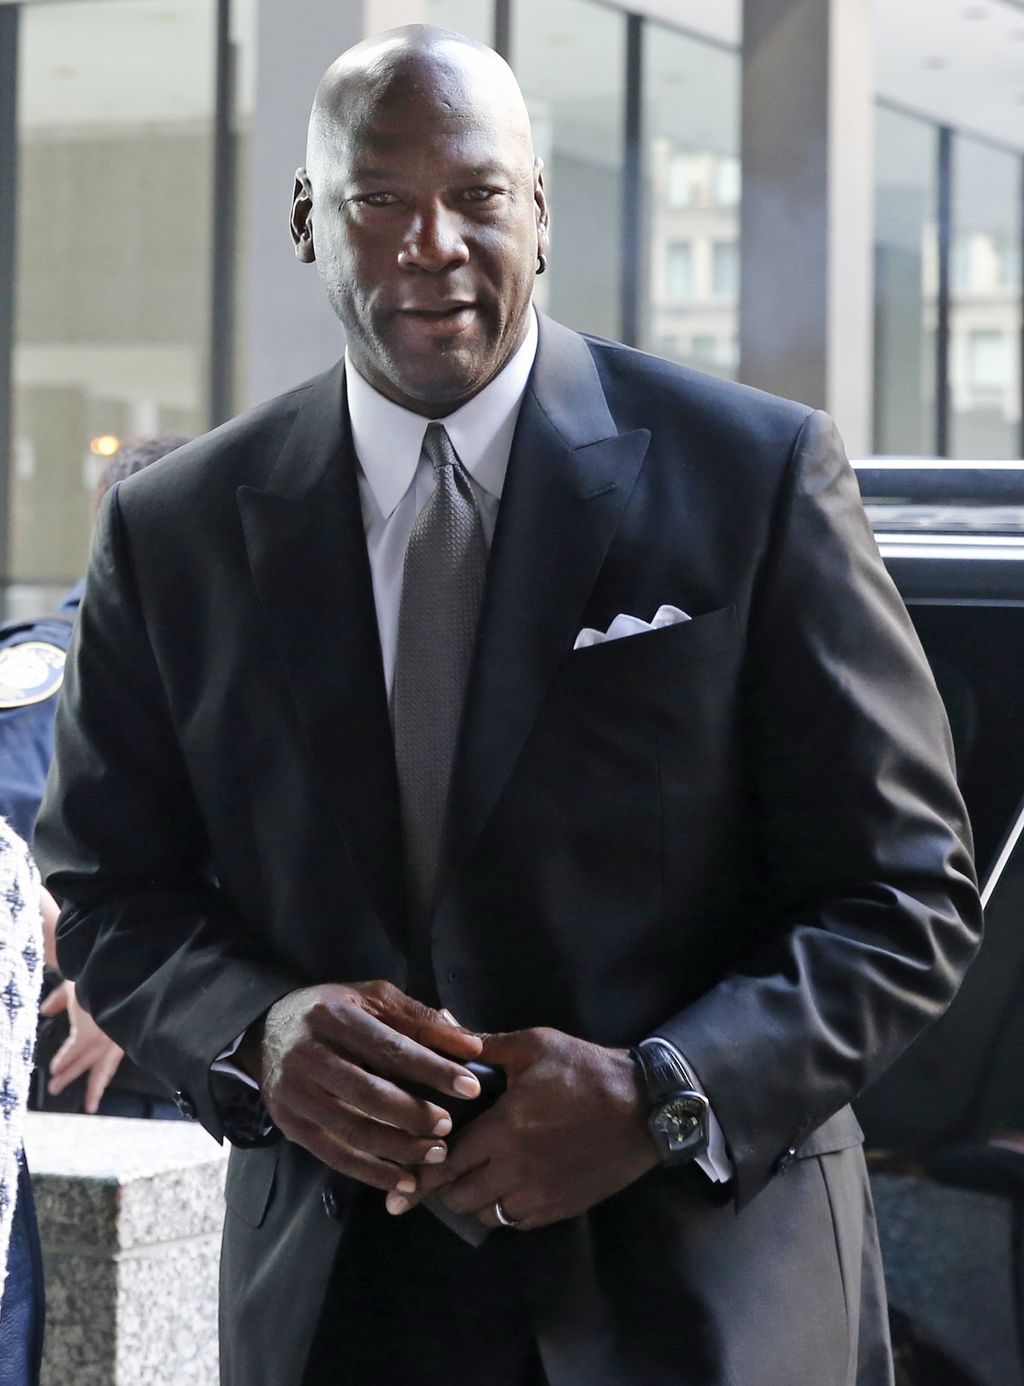 Michael Jordan arriba a una Corte Federal en Chicago. El astro demandó a una compañía estadounidense por emplear su imagen sin su consentimiento. (AP)